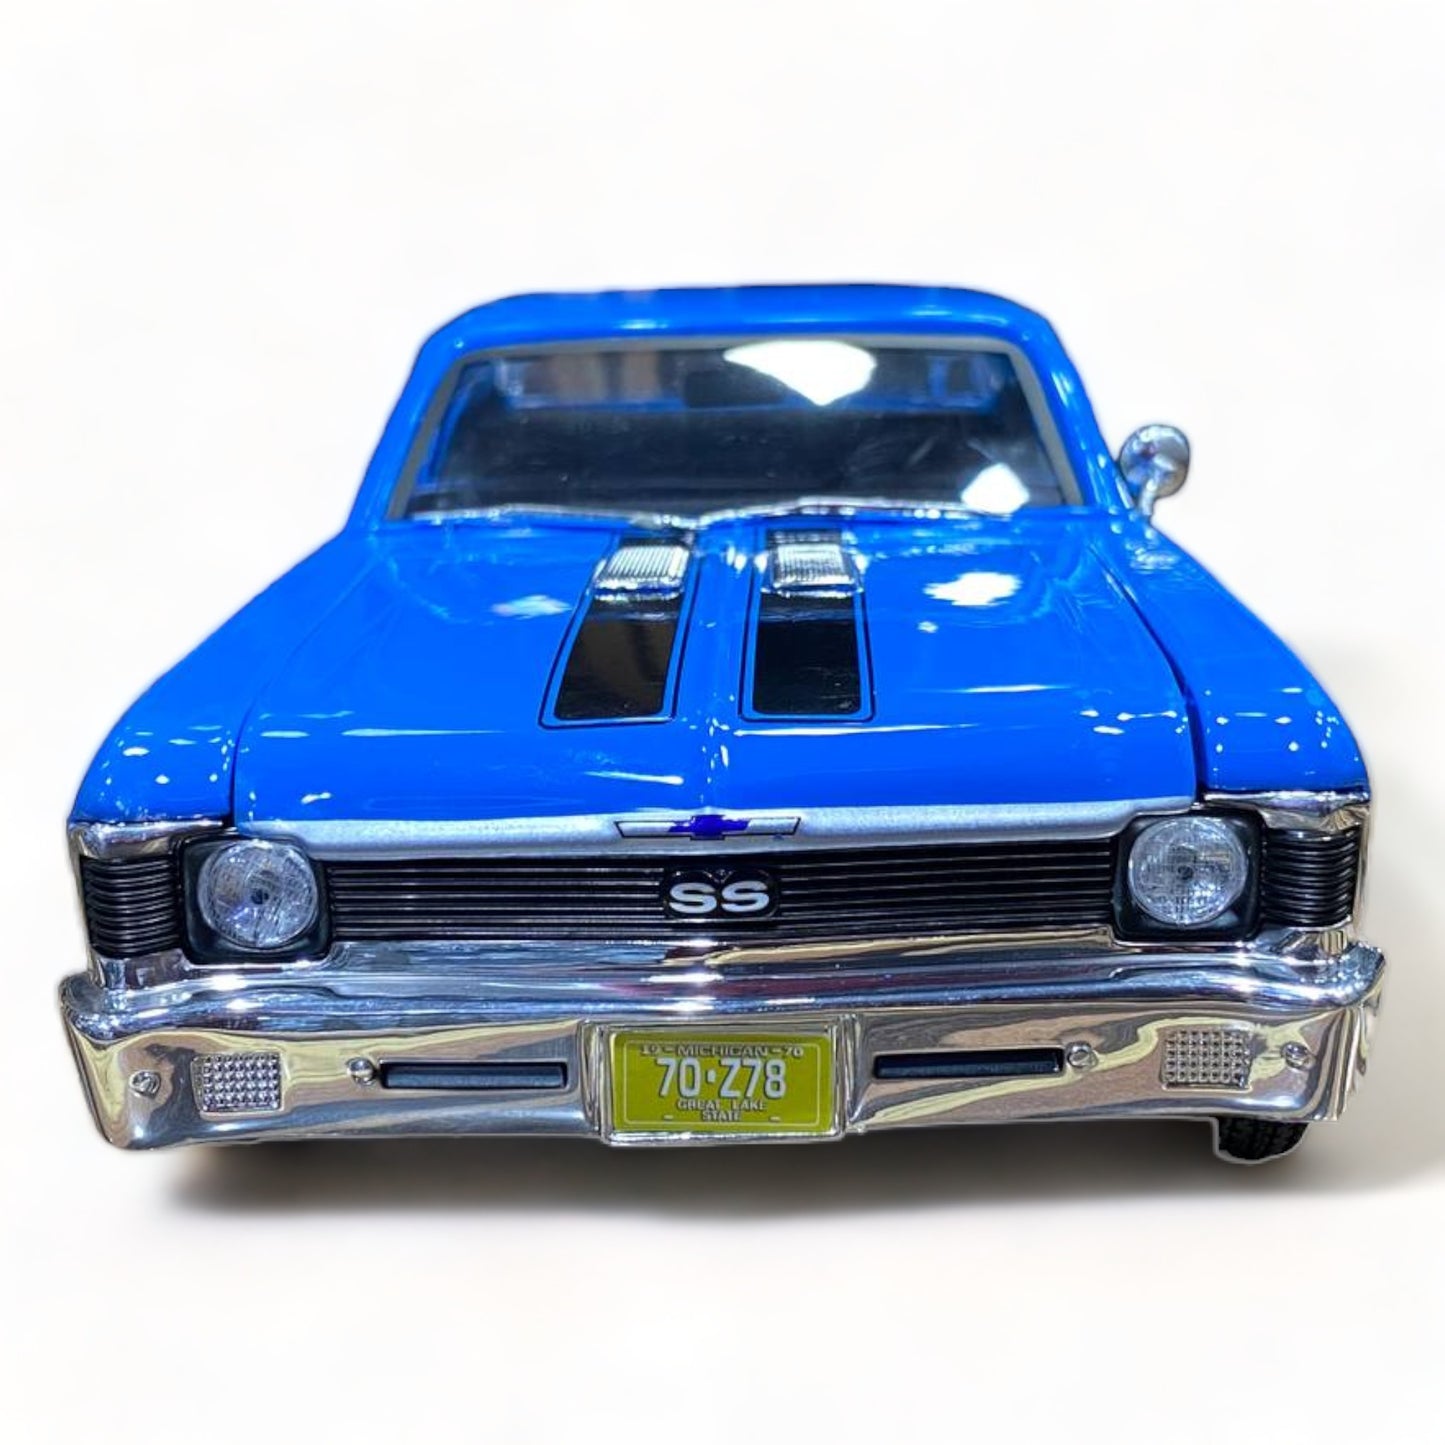 1/18 Maisto MAISTO Chevrolet Nova SS - Blue Scale Model Car